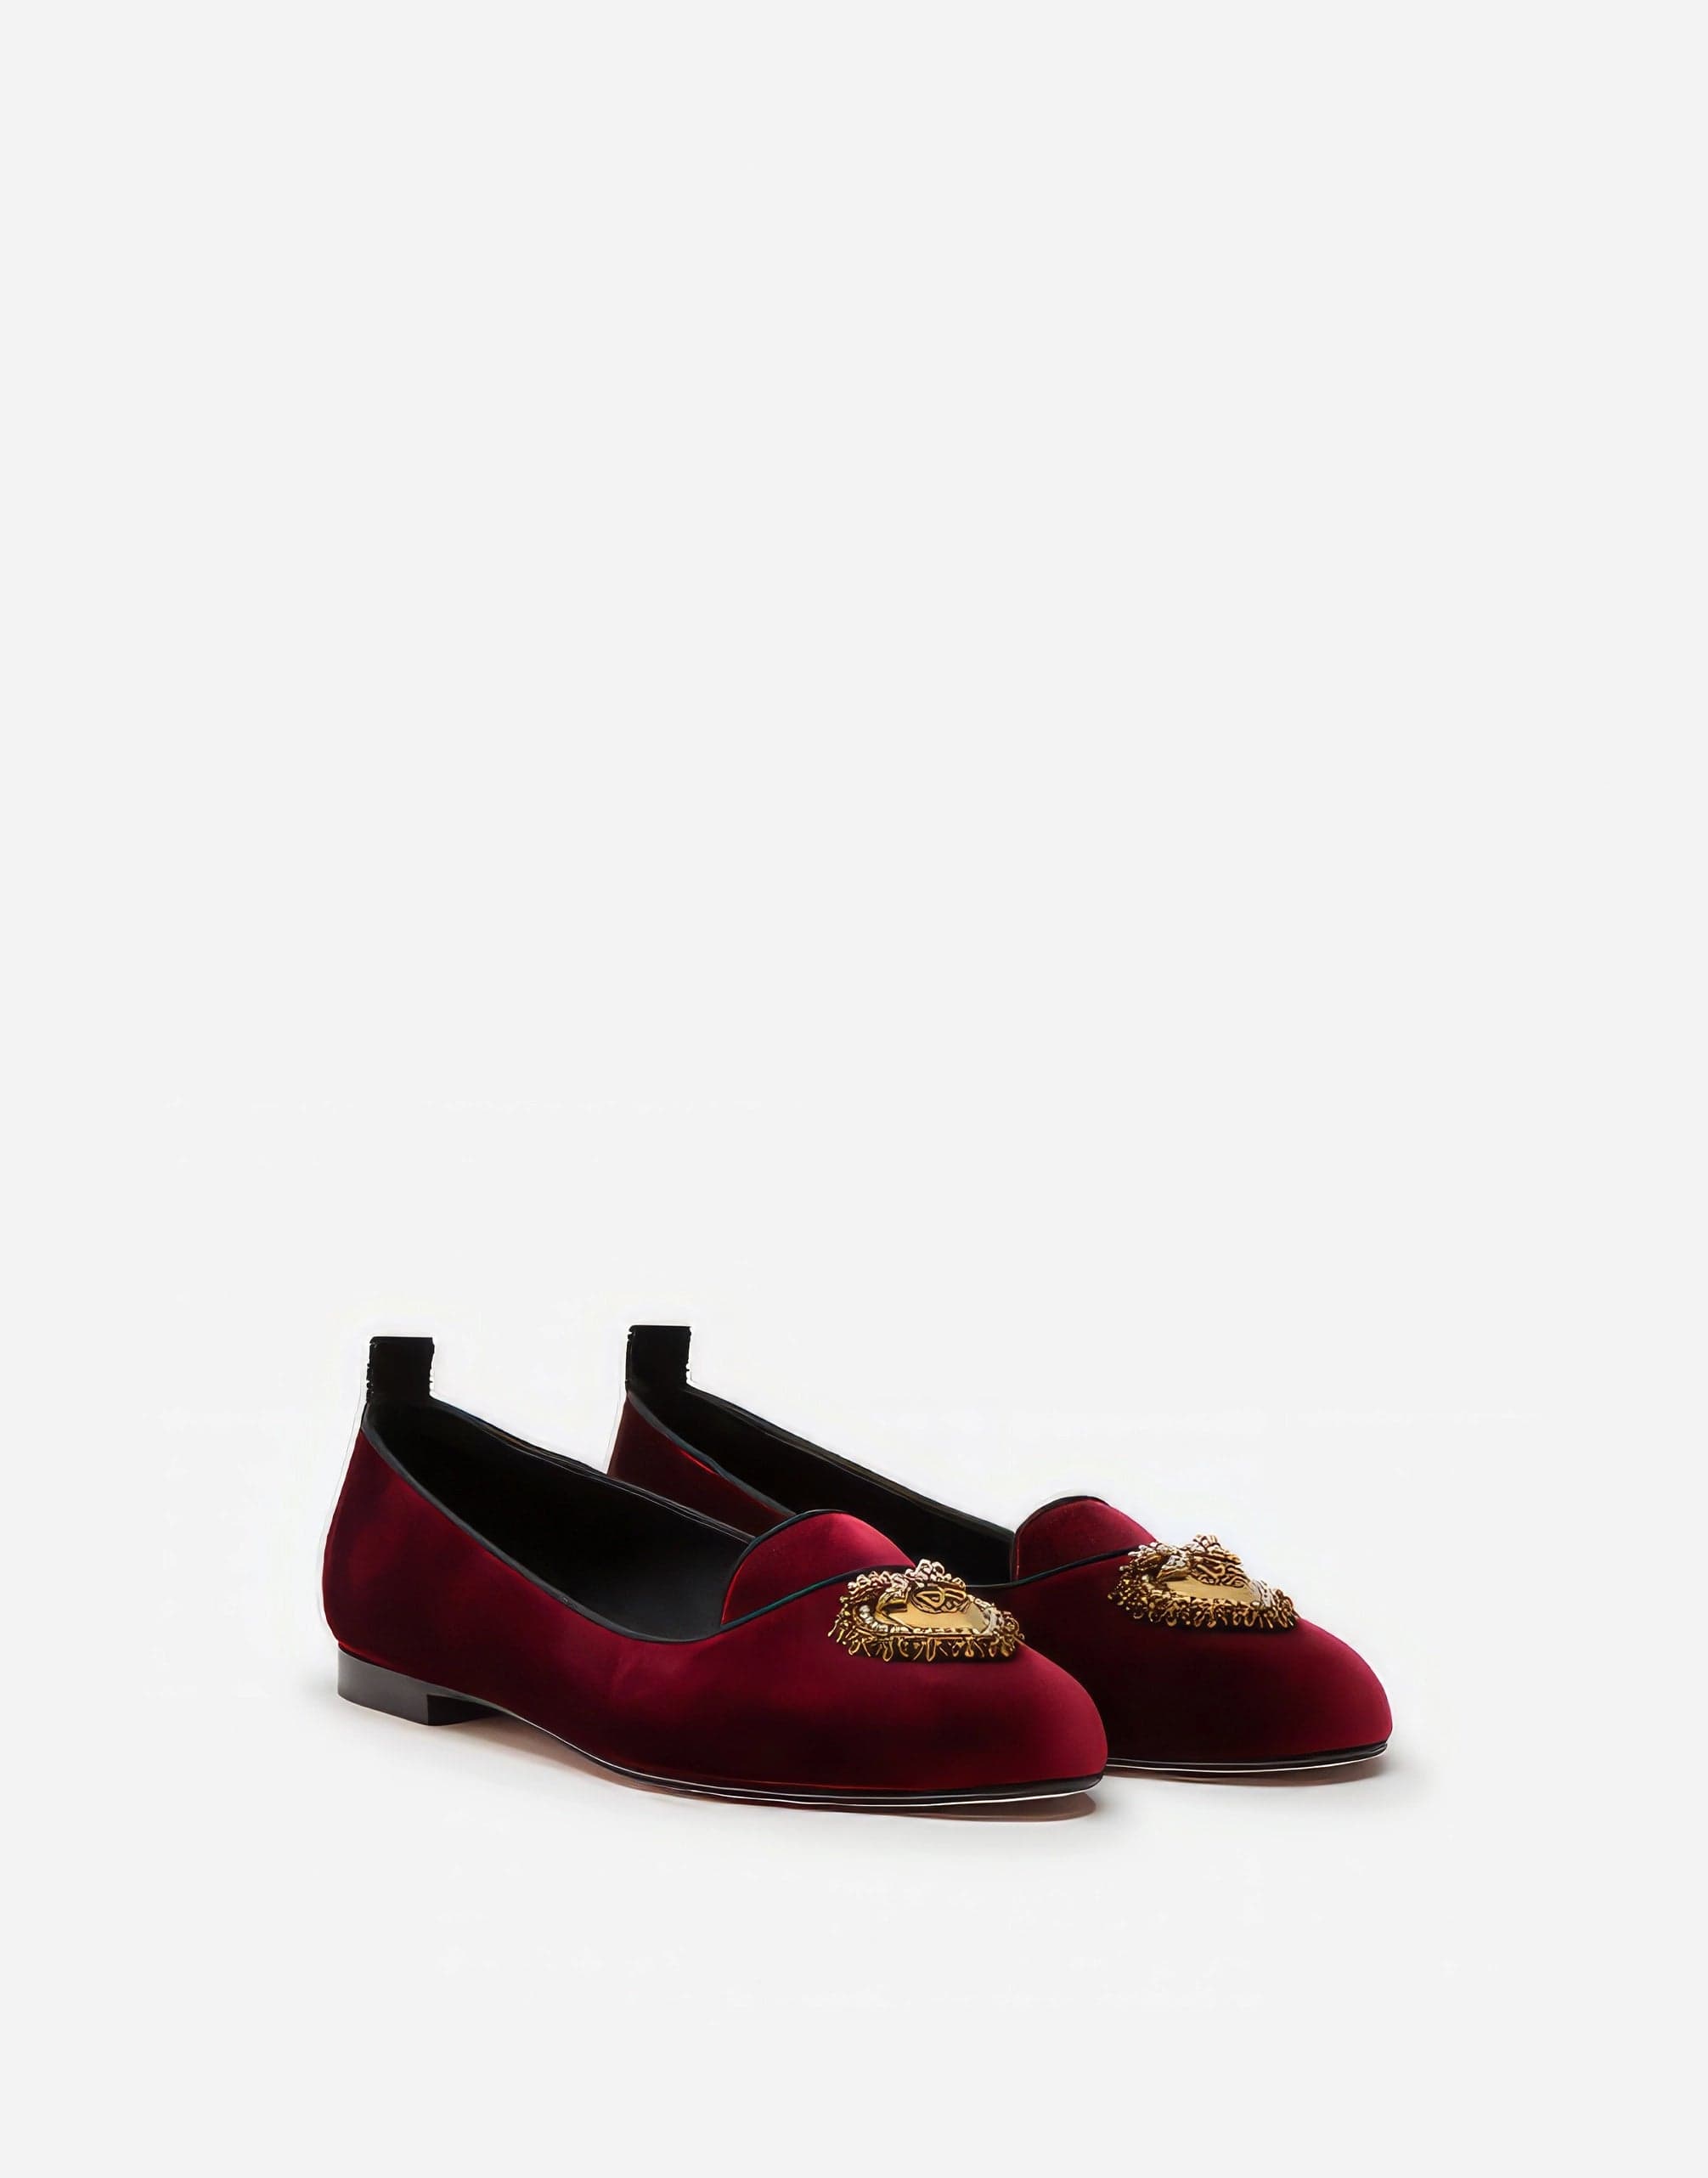 Dolce & Gabbana Devotion Velvet Ballerina Shoes